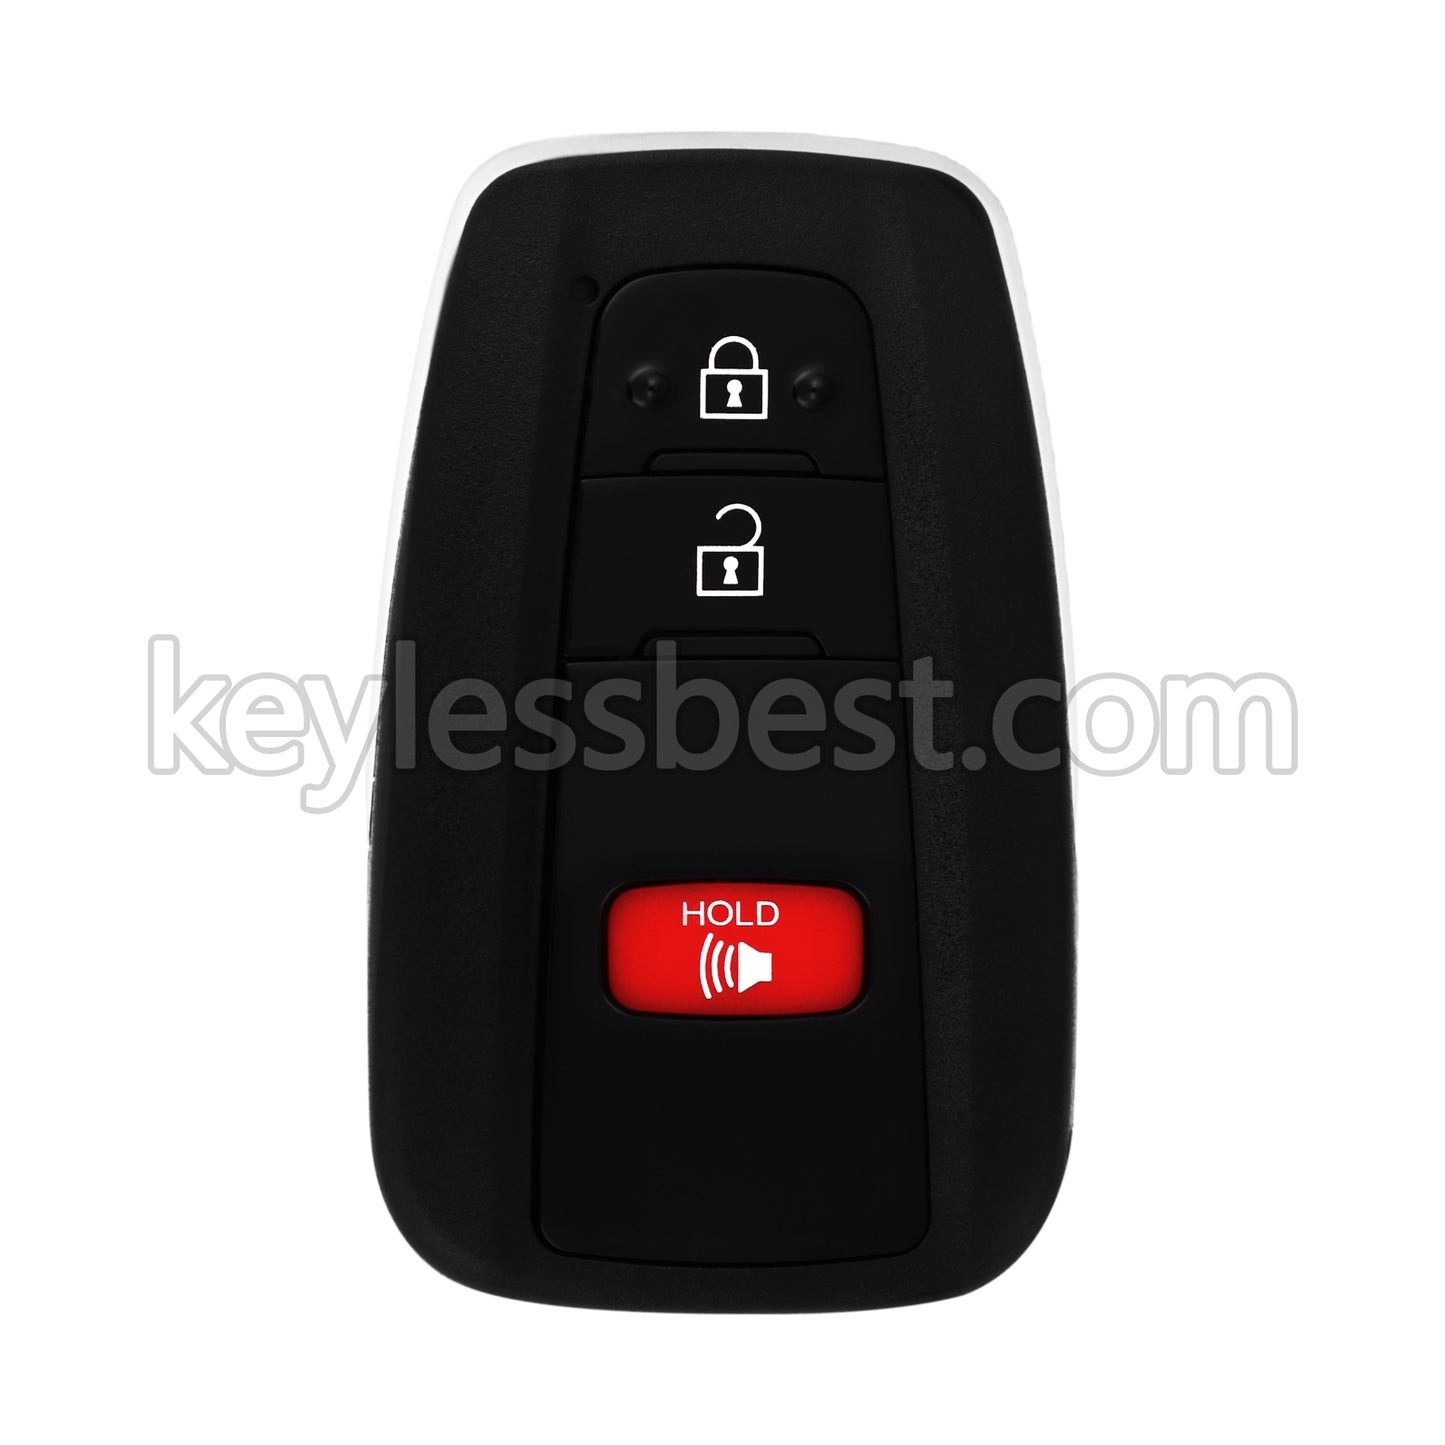 2019 - 2021 Toyota RAV4 / 3 Buttons Remote Key / HYQ14FBC / 315MHz